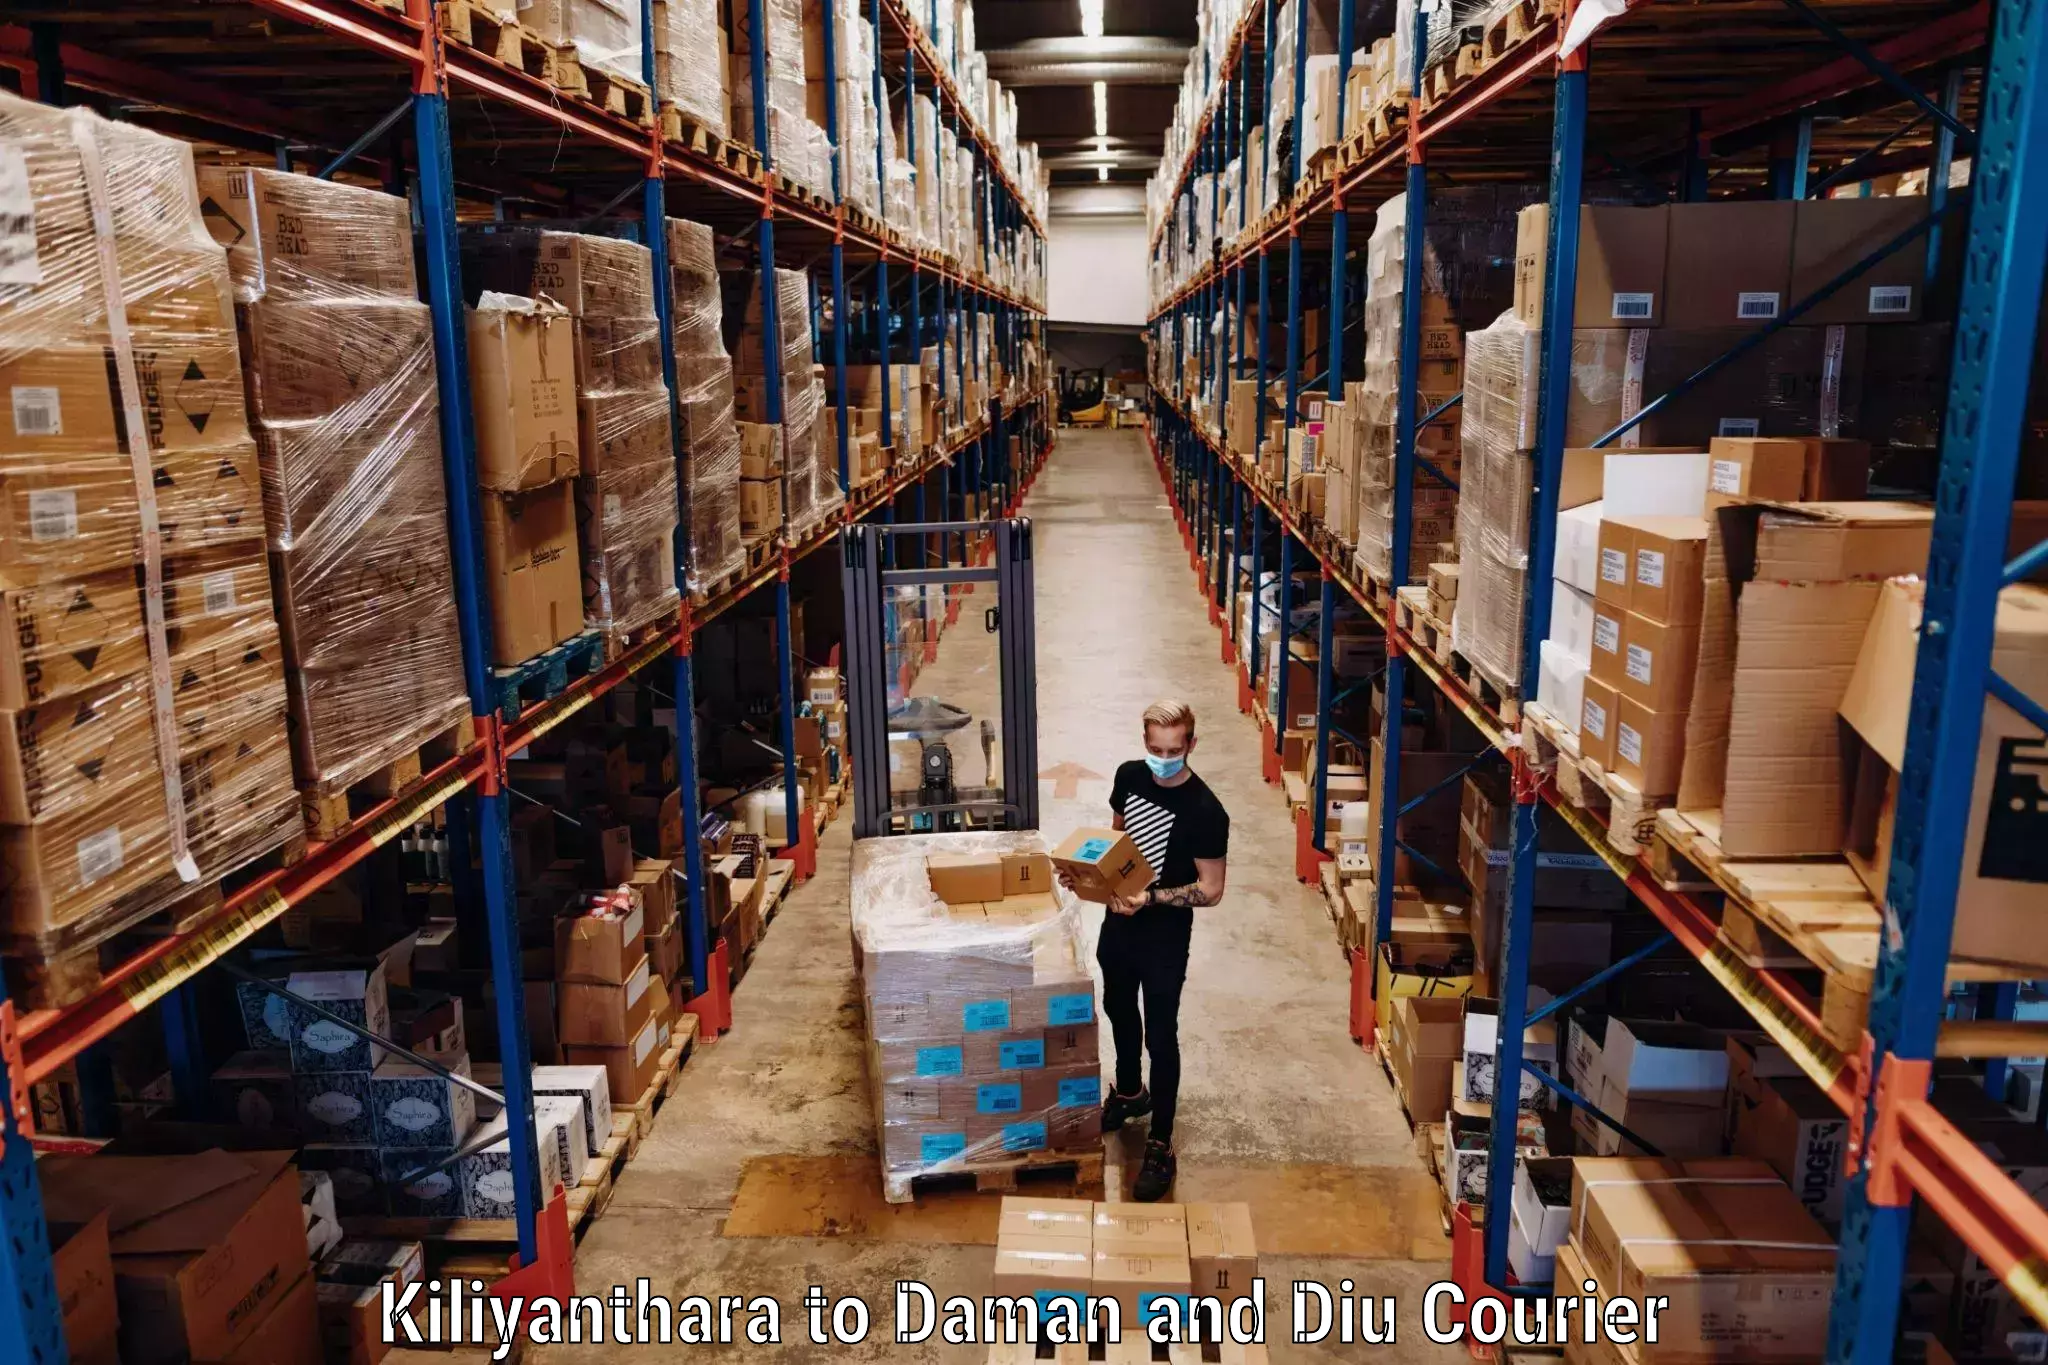 Luggage dispatch service Kiliyanthara to Diu